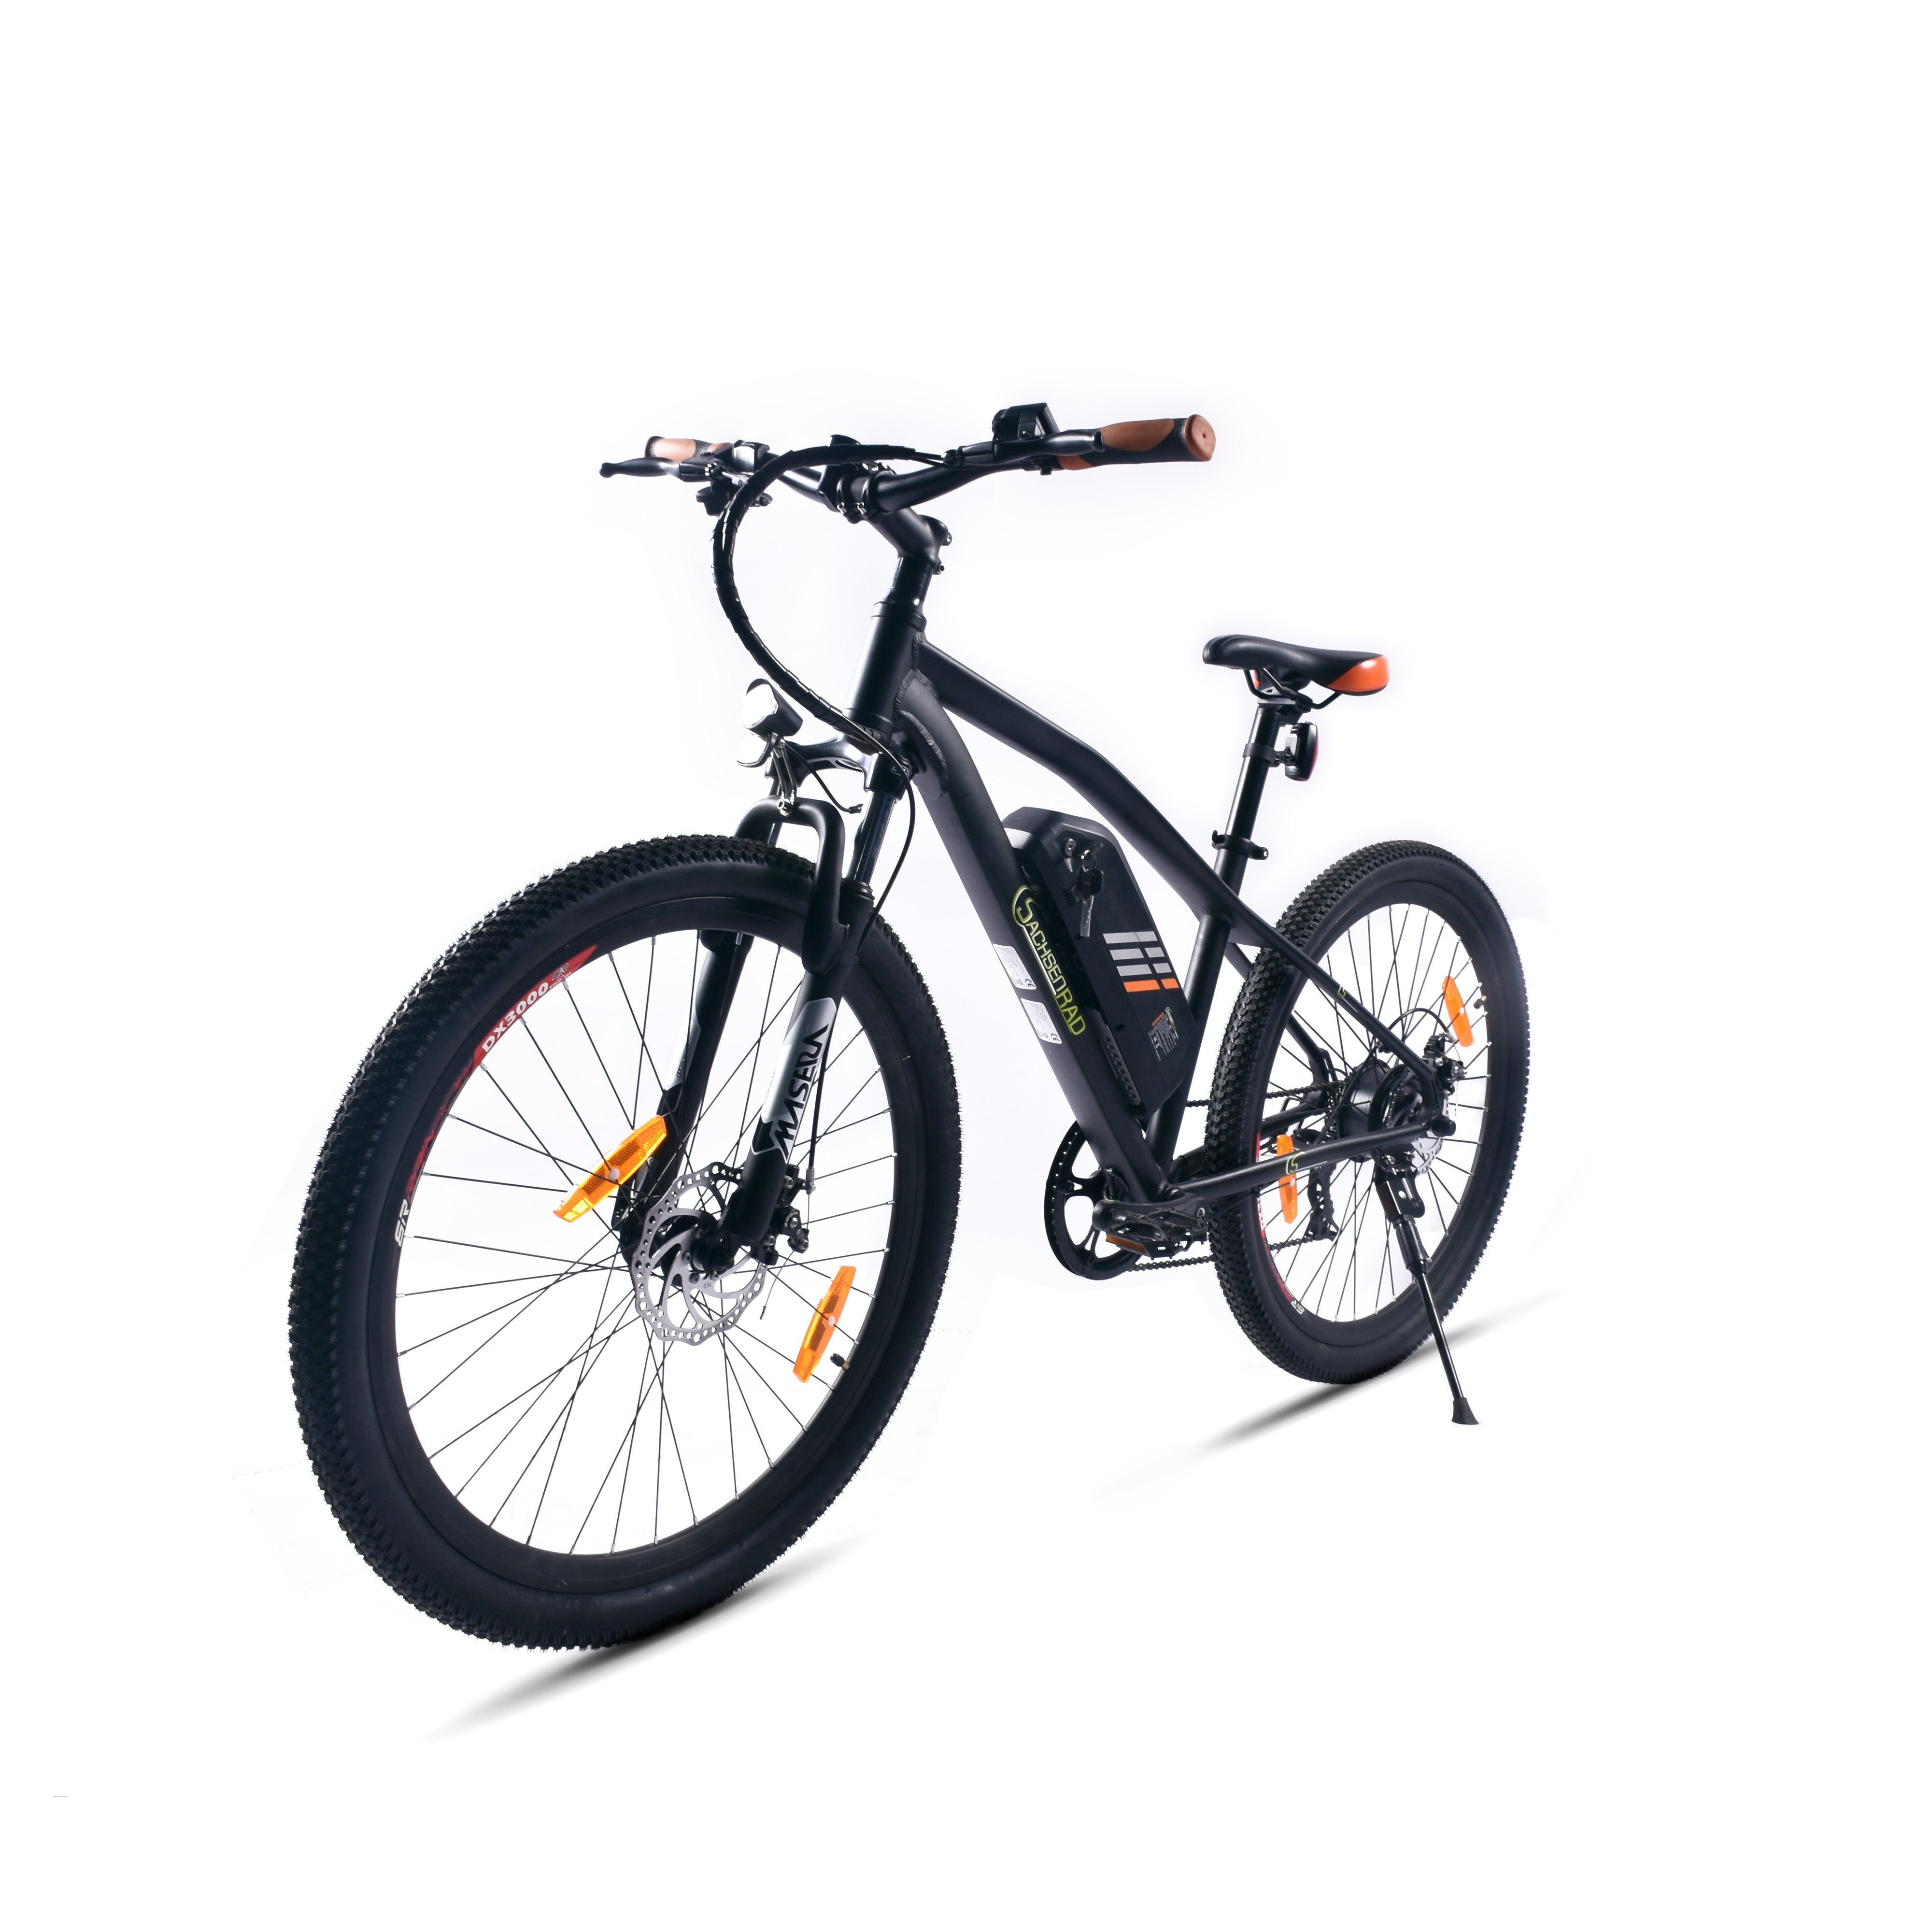 SachsenRAD E-Bike E-Bike R6 27,5 Zoll E-Mountainbikeca.150 KM Reichweite Schwarz-Orange, 7 Gang Shimano Tourney TX 7 Schaltwerk, Kettenschaltung, Hinterradmotor, (1 Stück), LCD-Display,LED-Front- und Rücklicht, StVZO konform